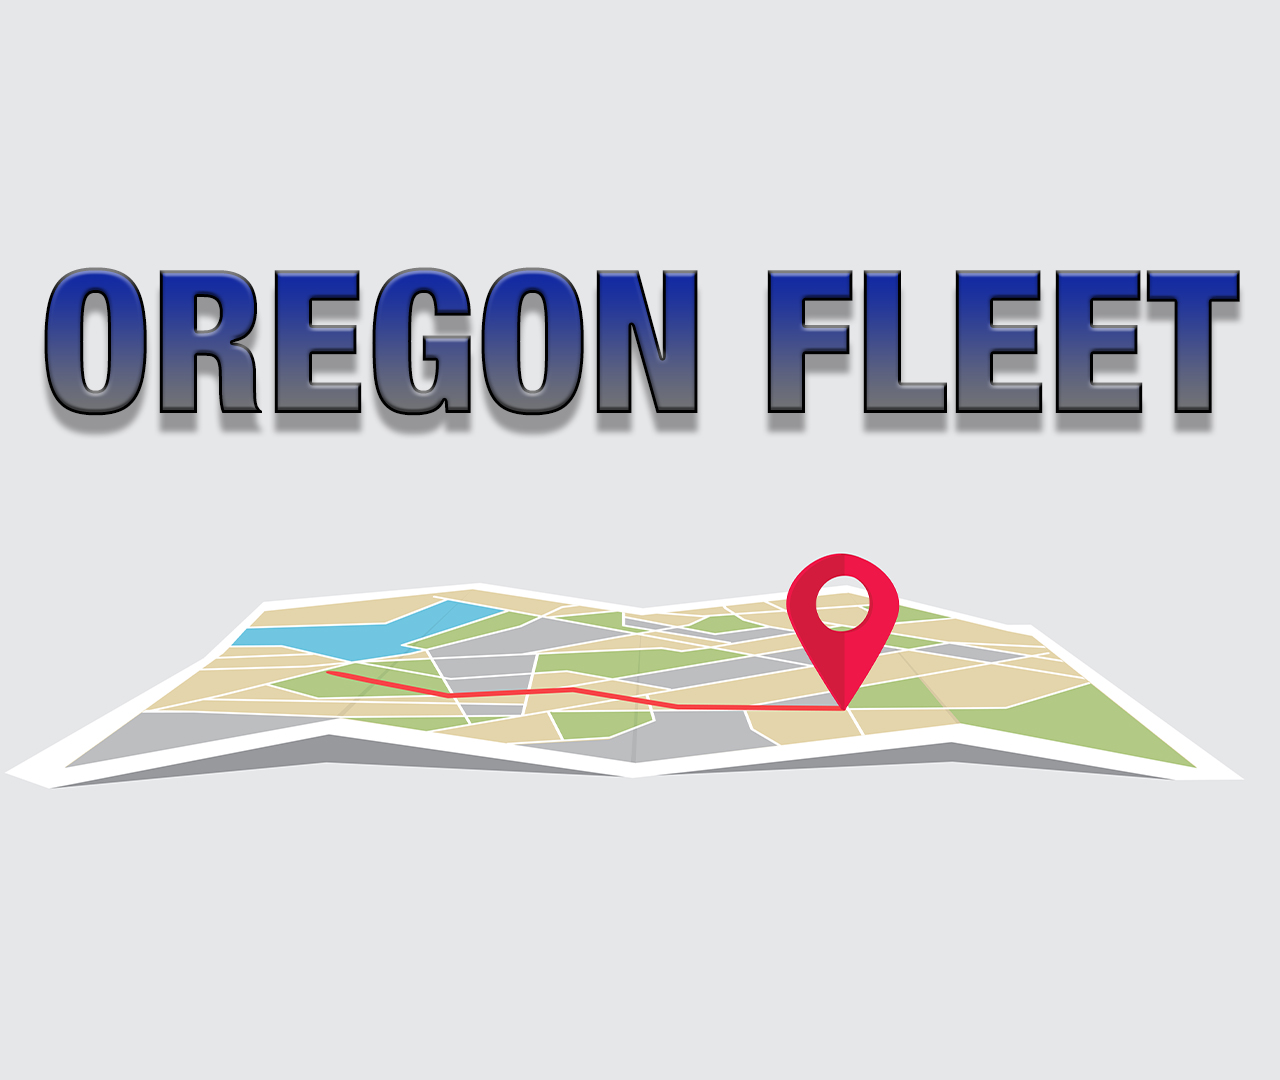 Oregon Fleet Application Released!